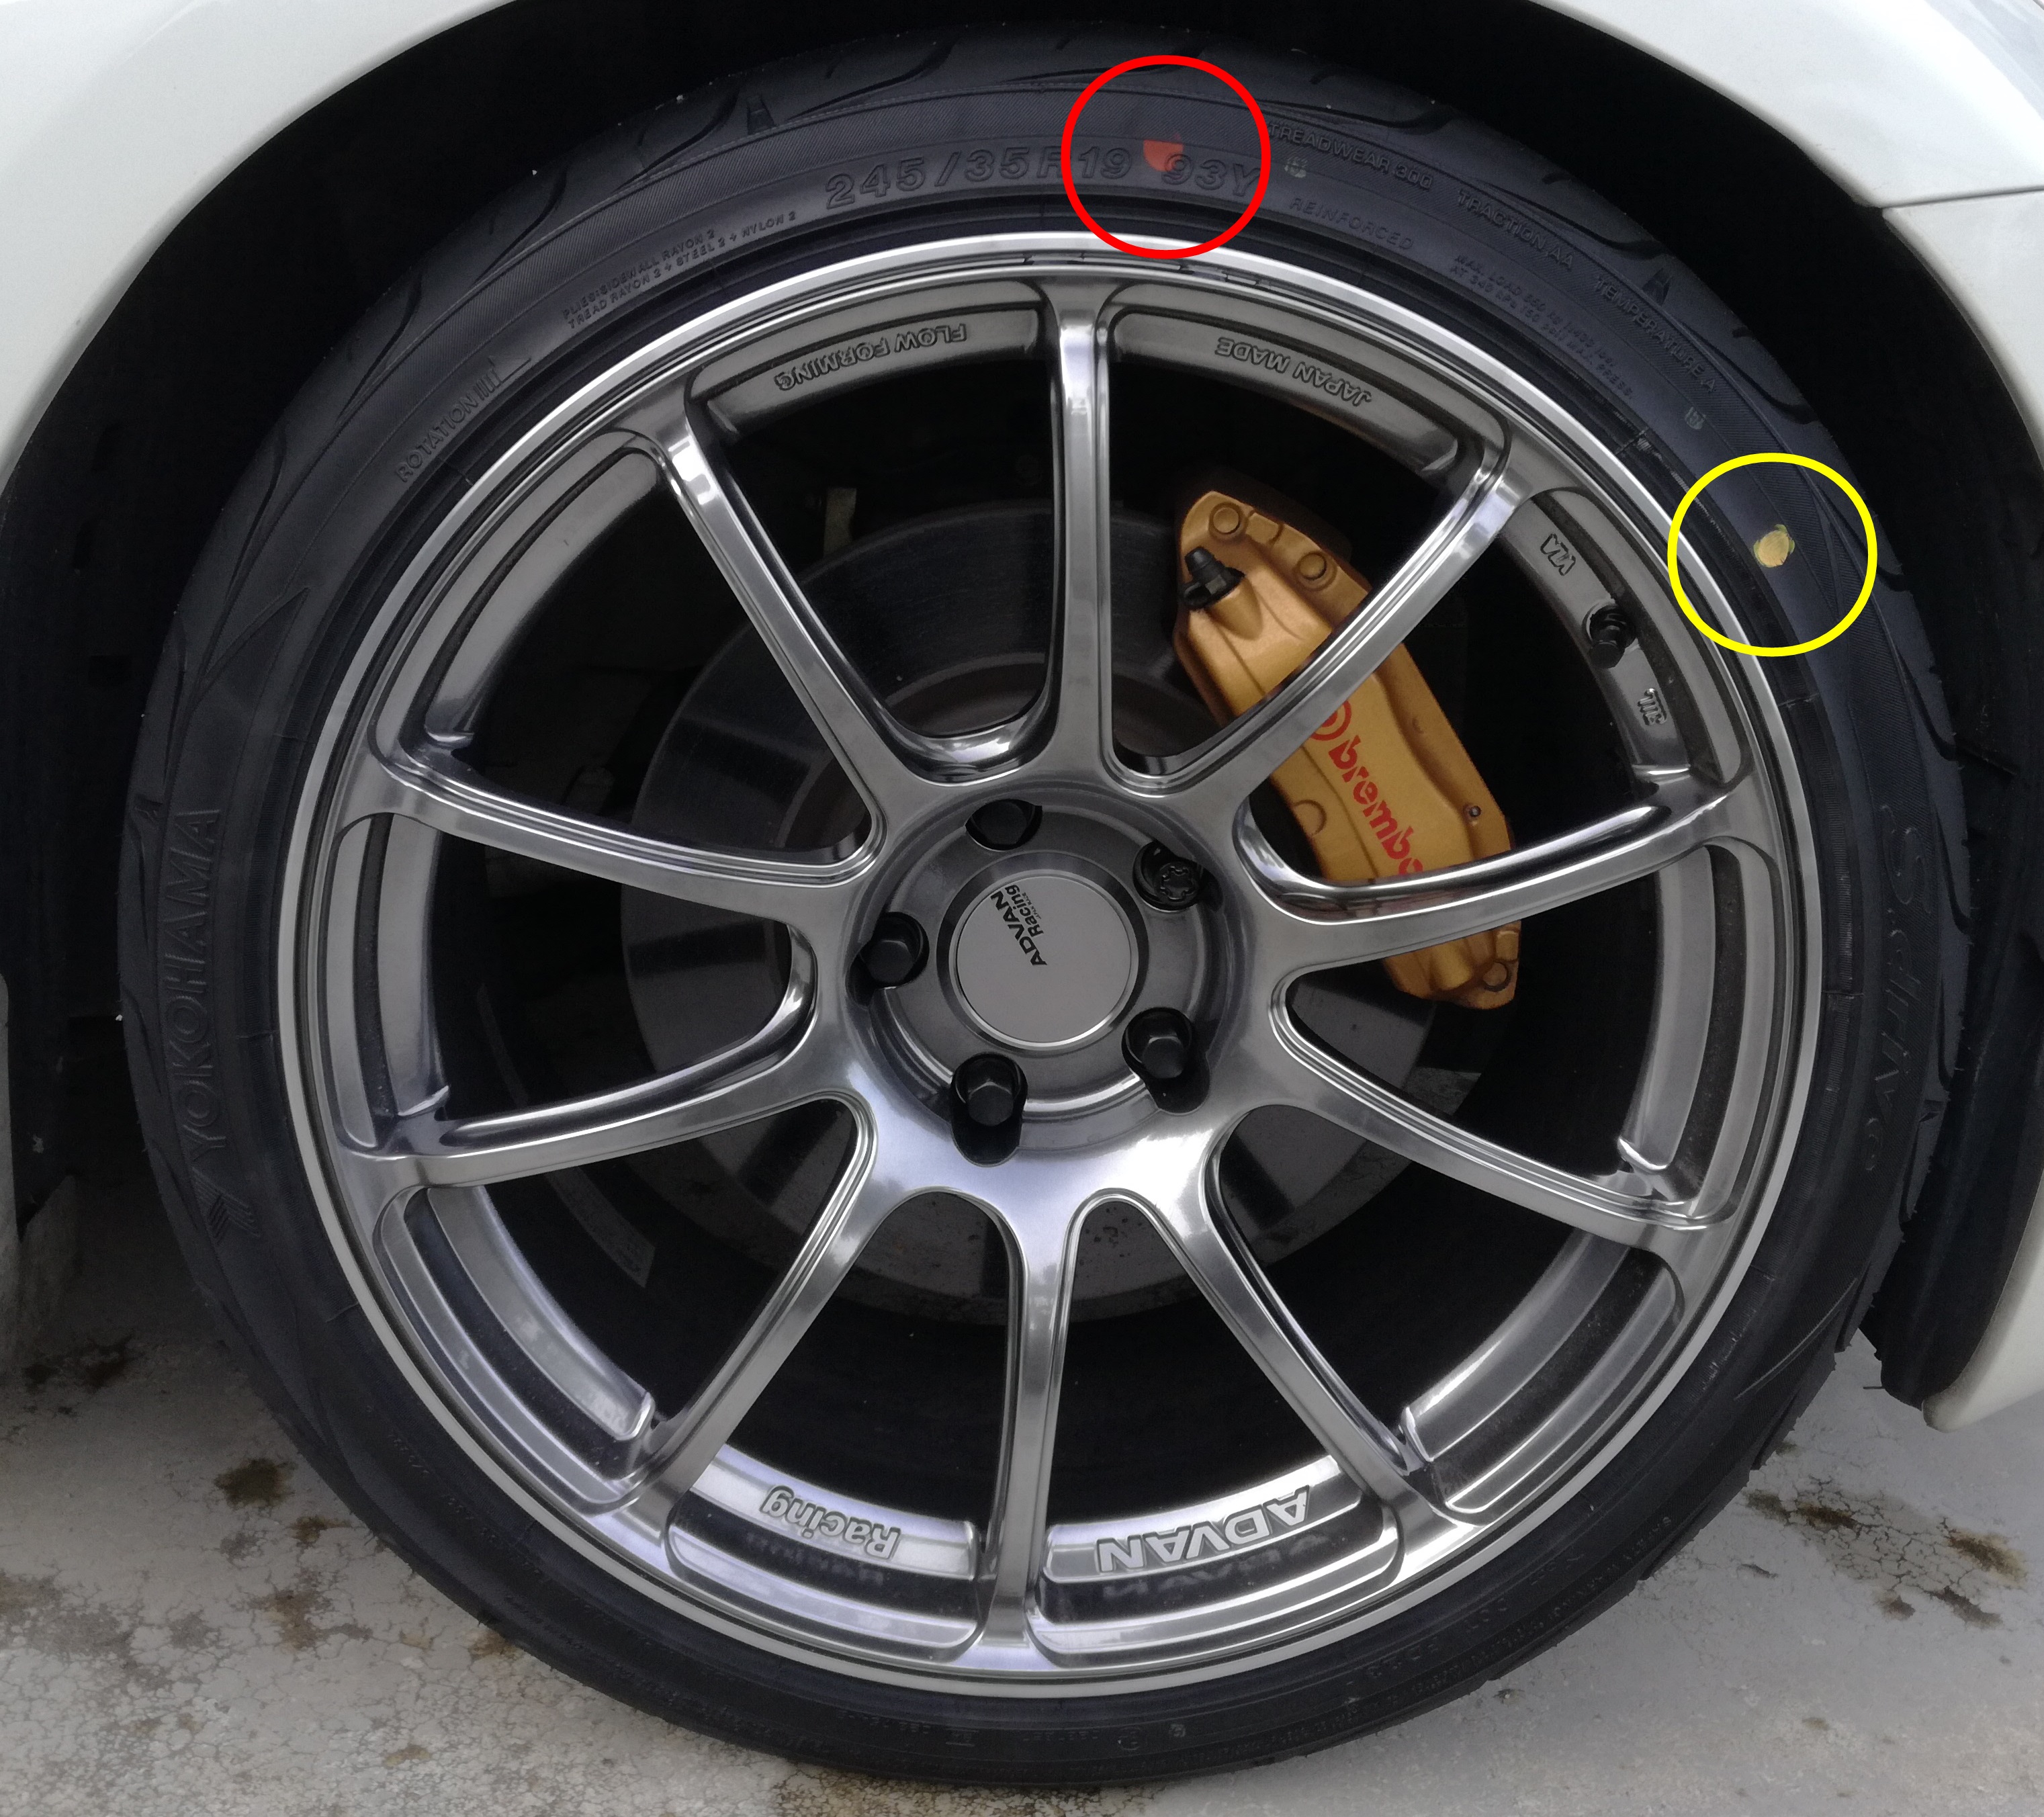 車のタイヤのパンクの見分け方は 走行 運転中の音や振動で確認できる